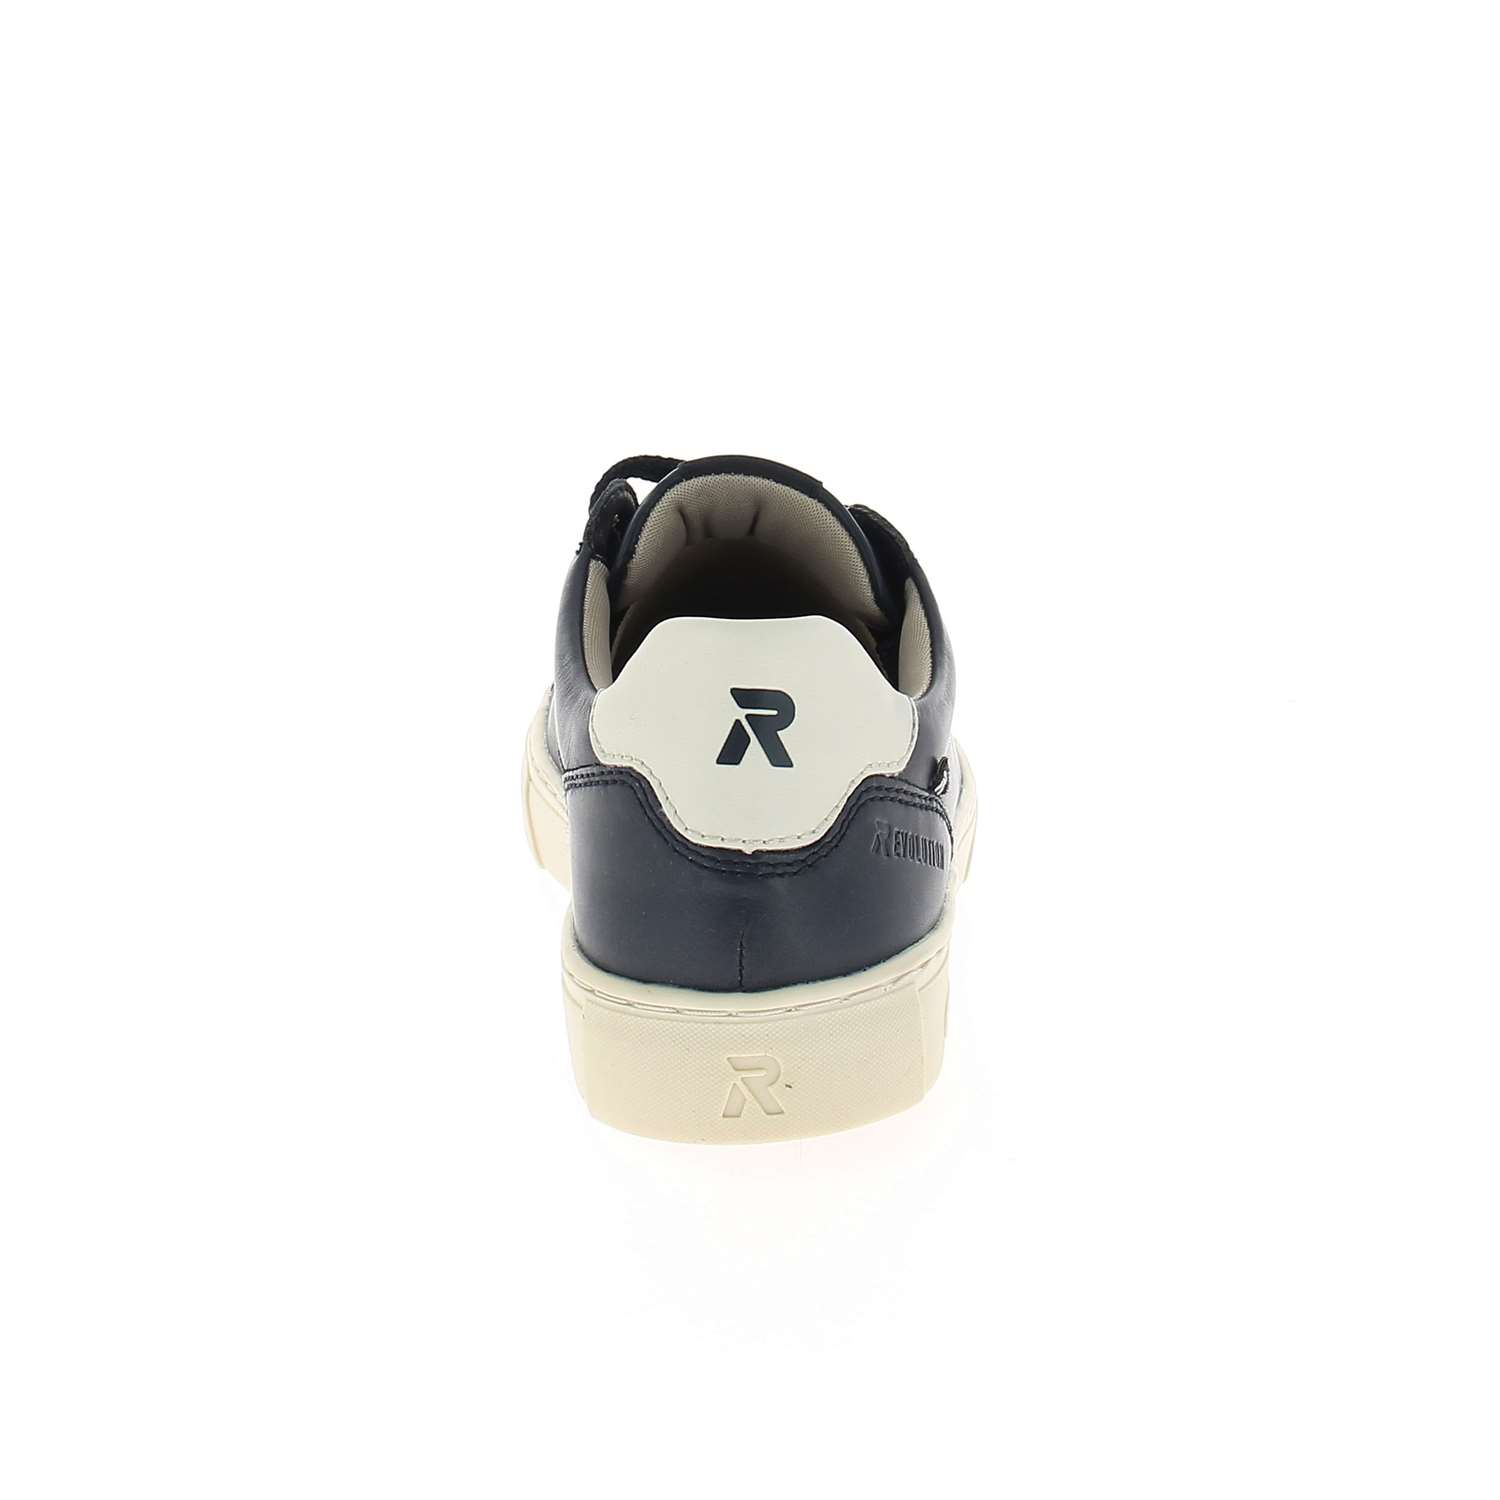 04 - REVOLUT - RIEKER - Chaussures à lacets - Cuir